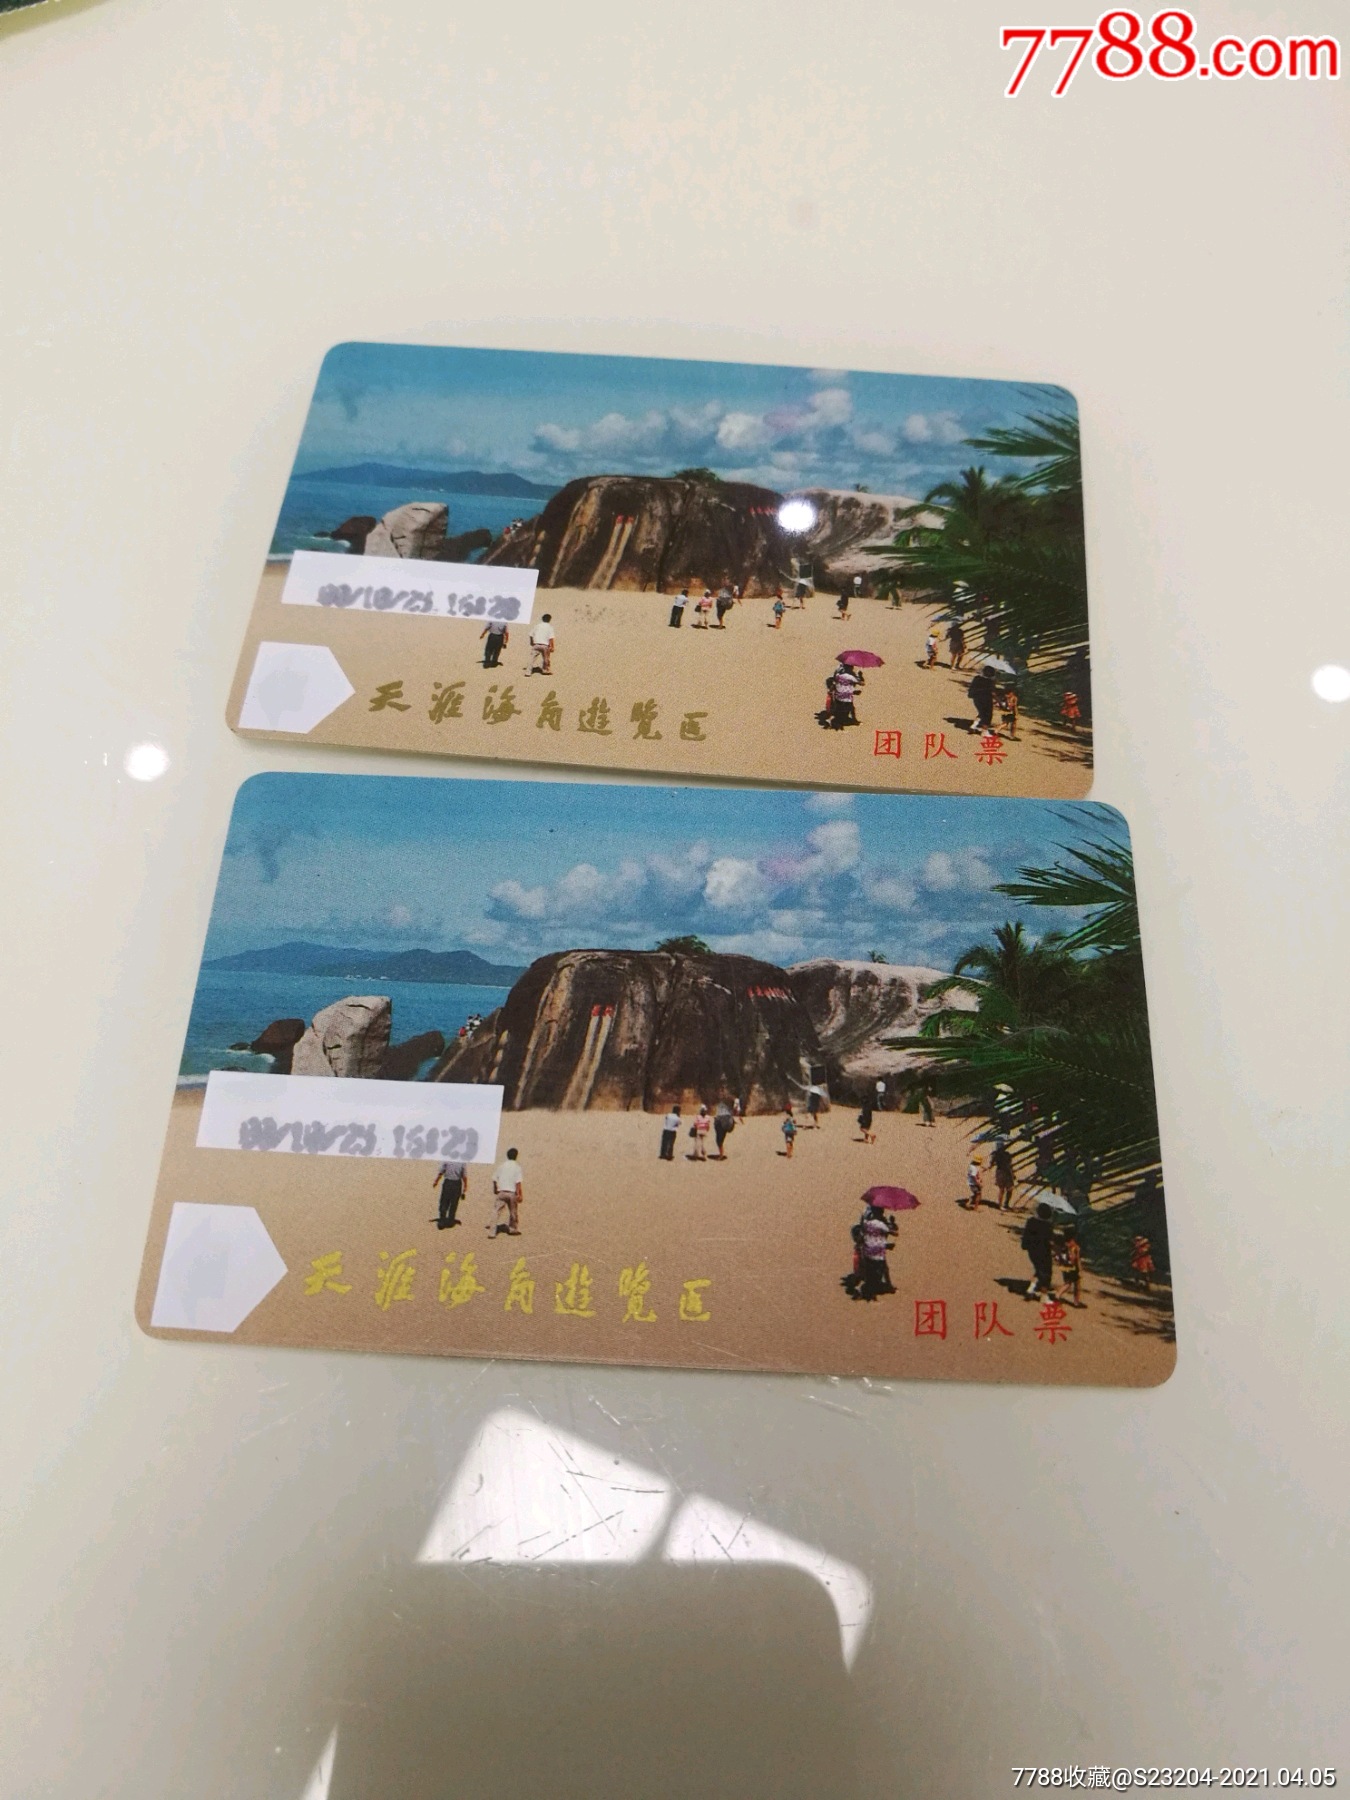 天涯海角游览区团队磁卡票门票